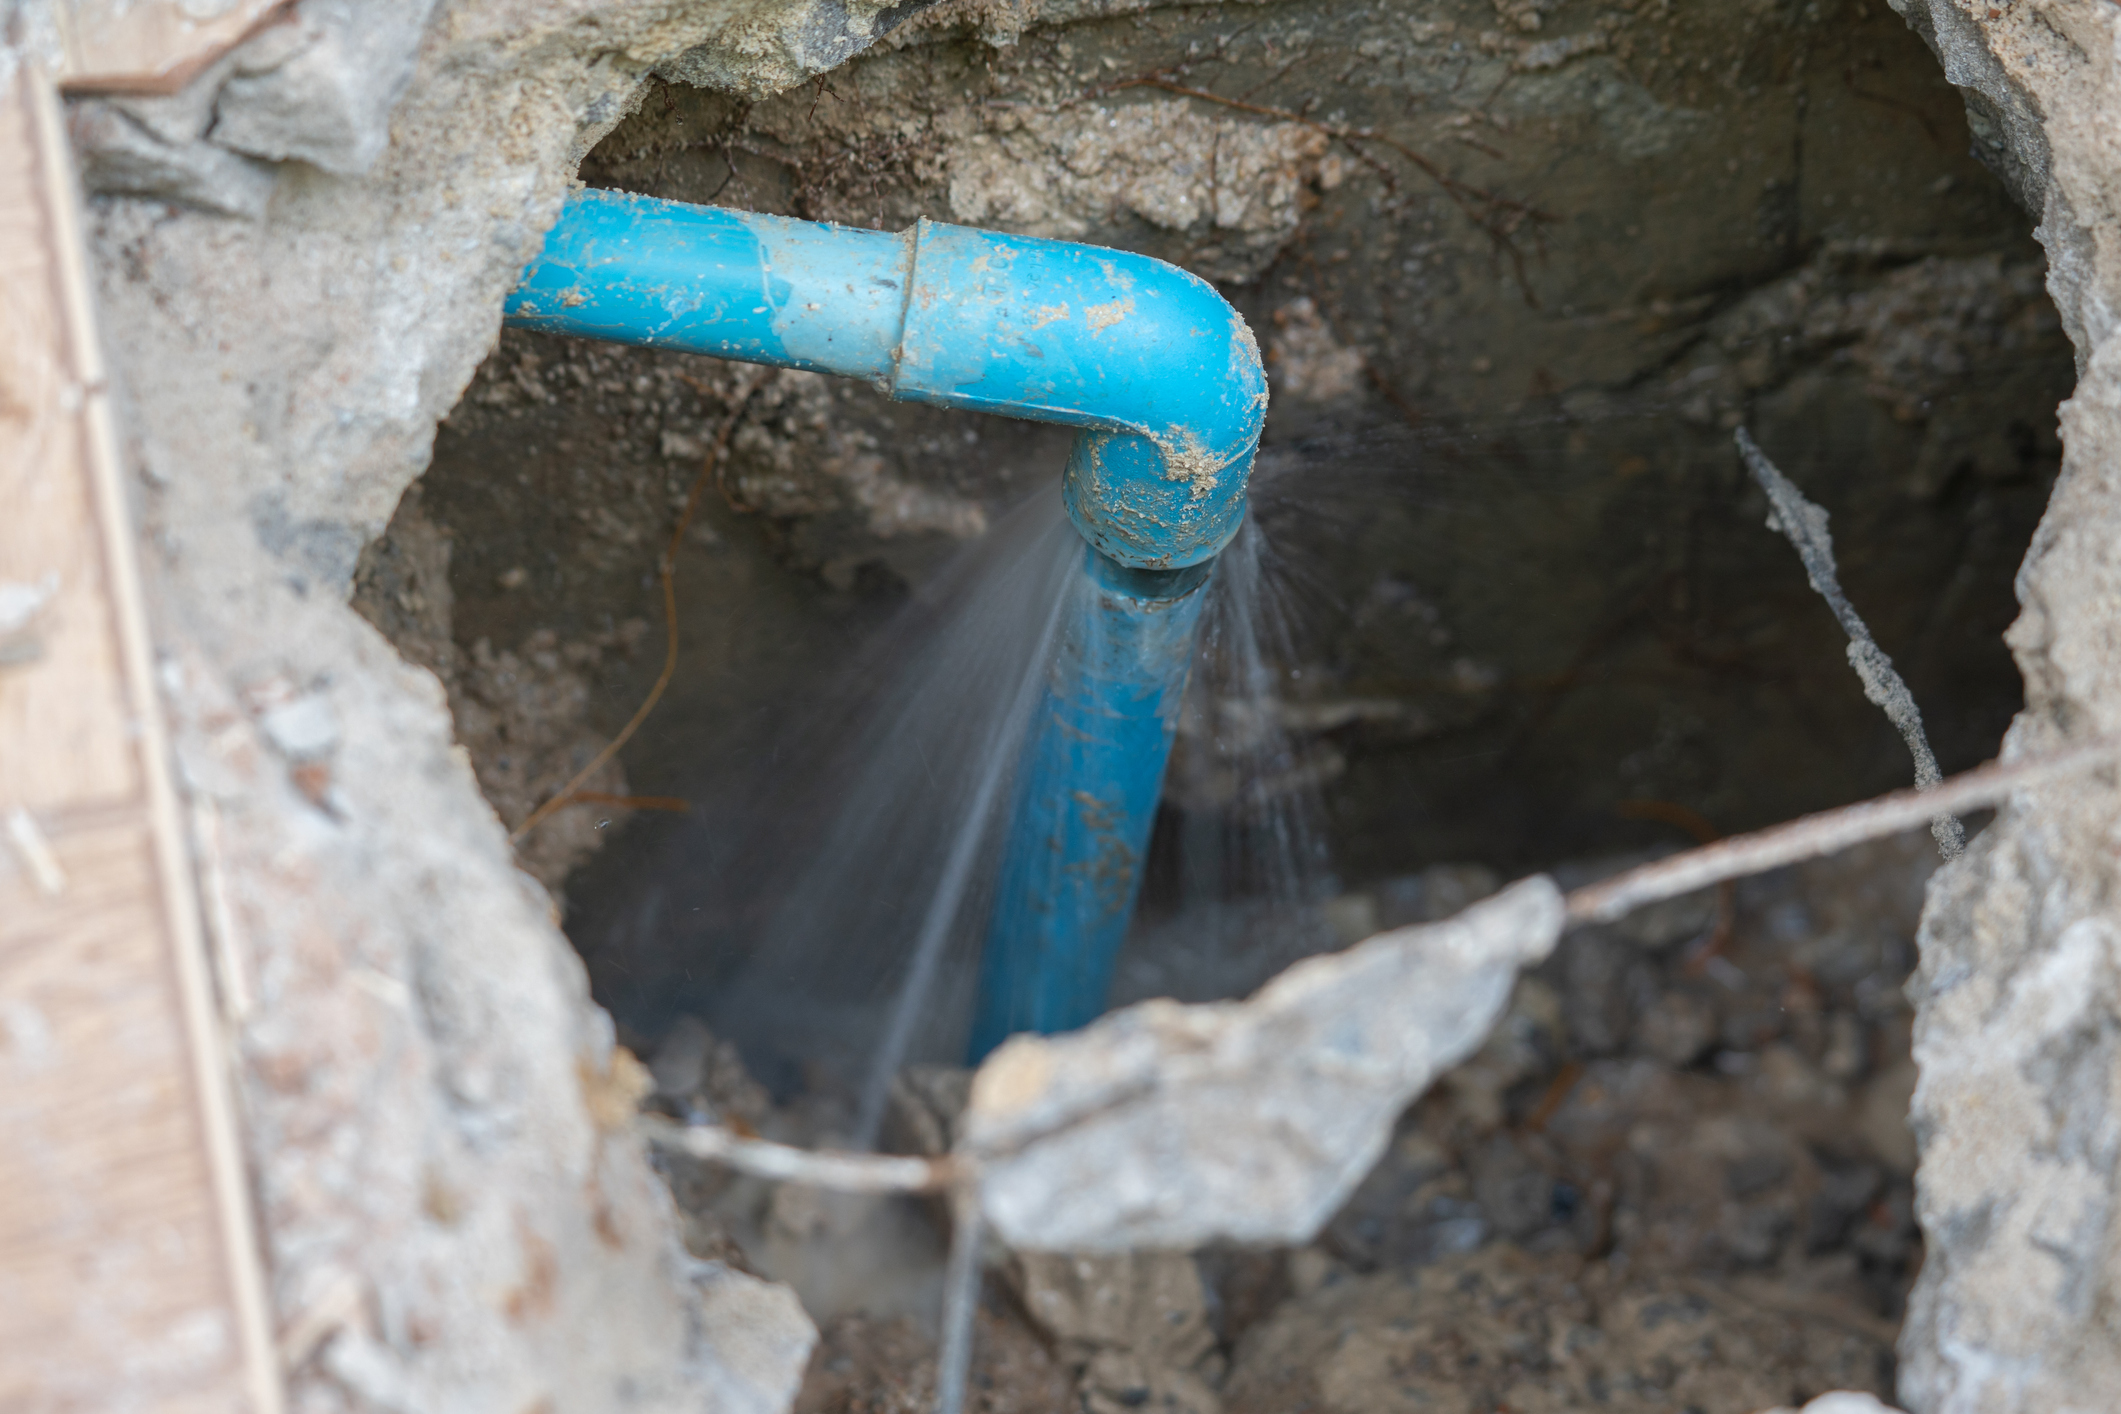 How to Find a Water Leak Underground